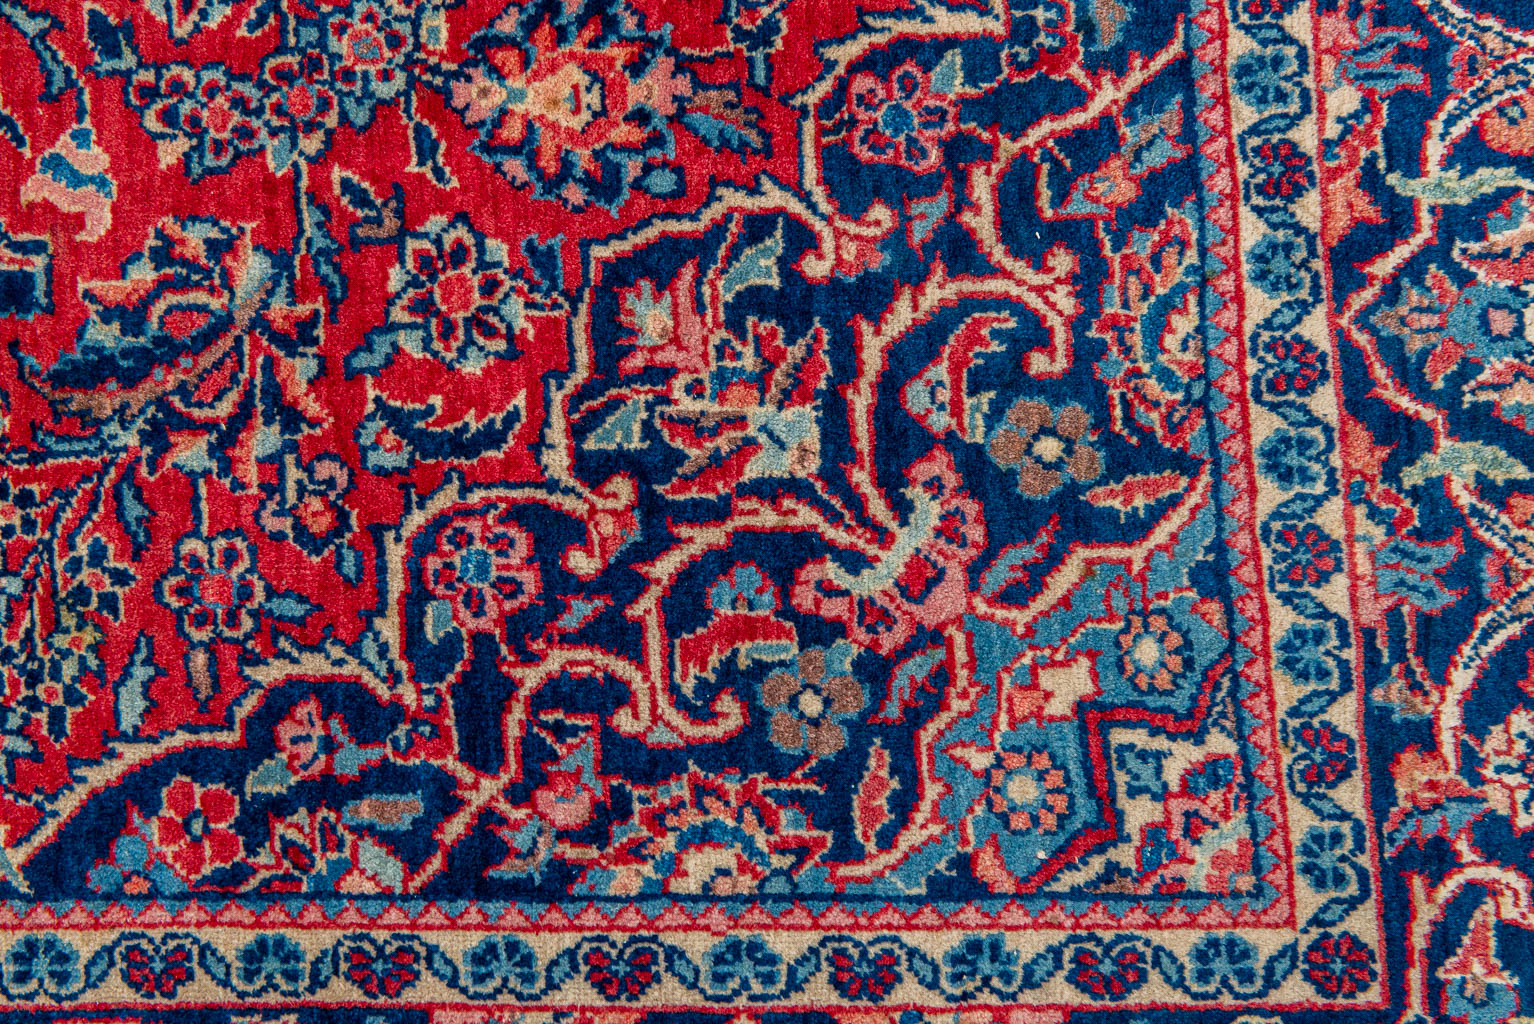 An Oriental hand-made carpet. (204 x 134 cm)